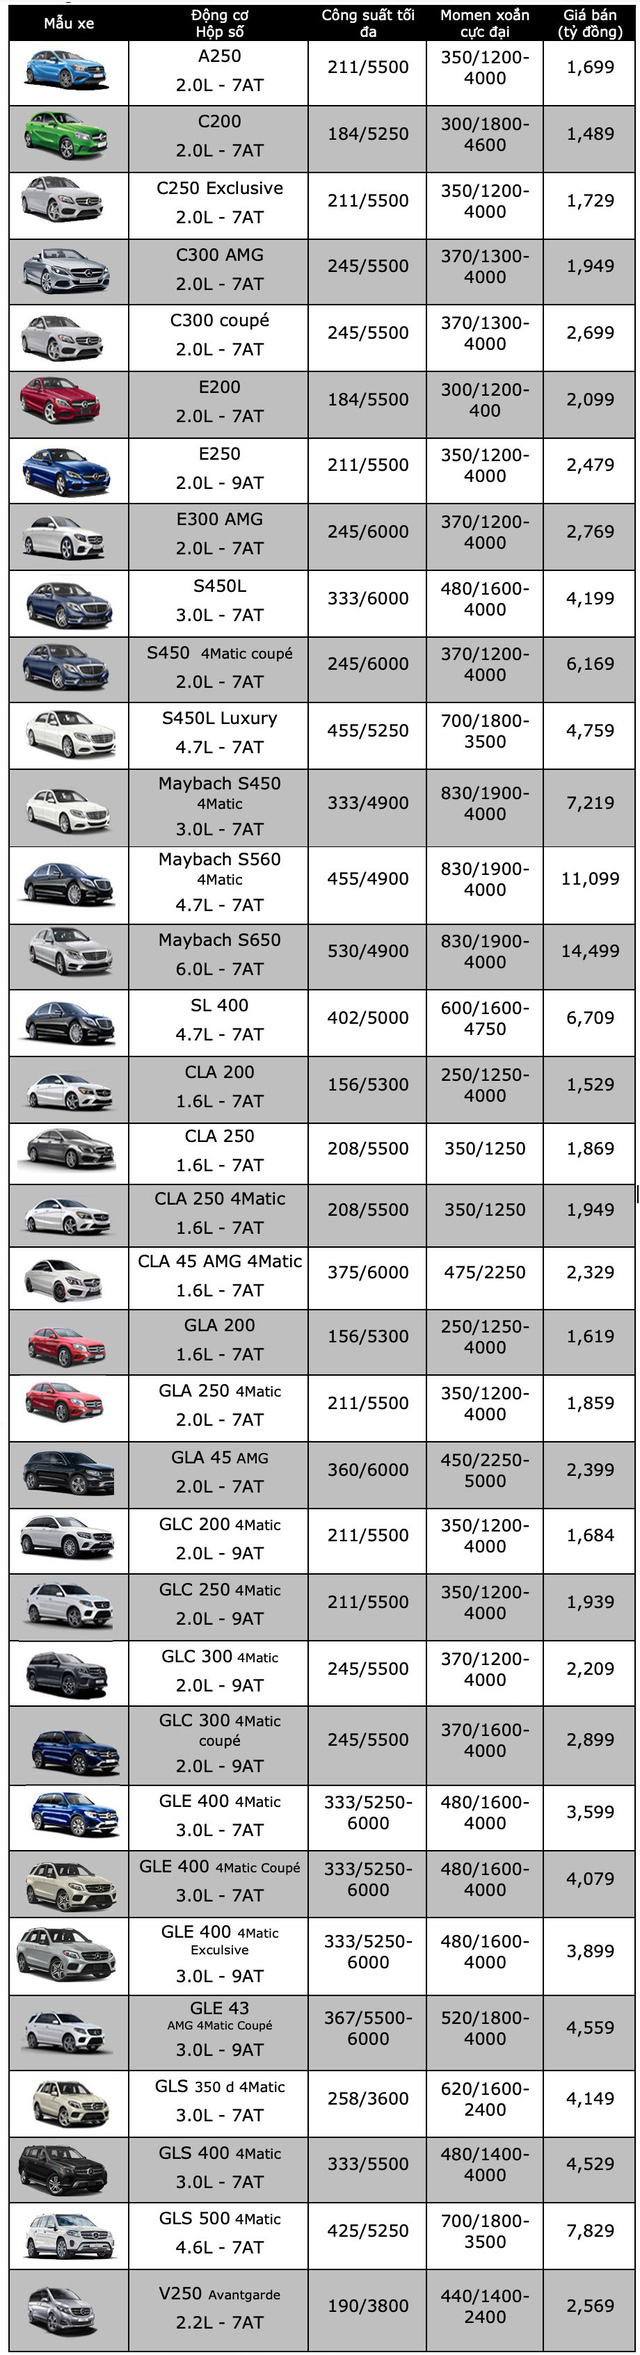 Giá bán cụ thể các mẫu Mercedes-Benz tại Việt Nam trong tháng 1/2019